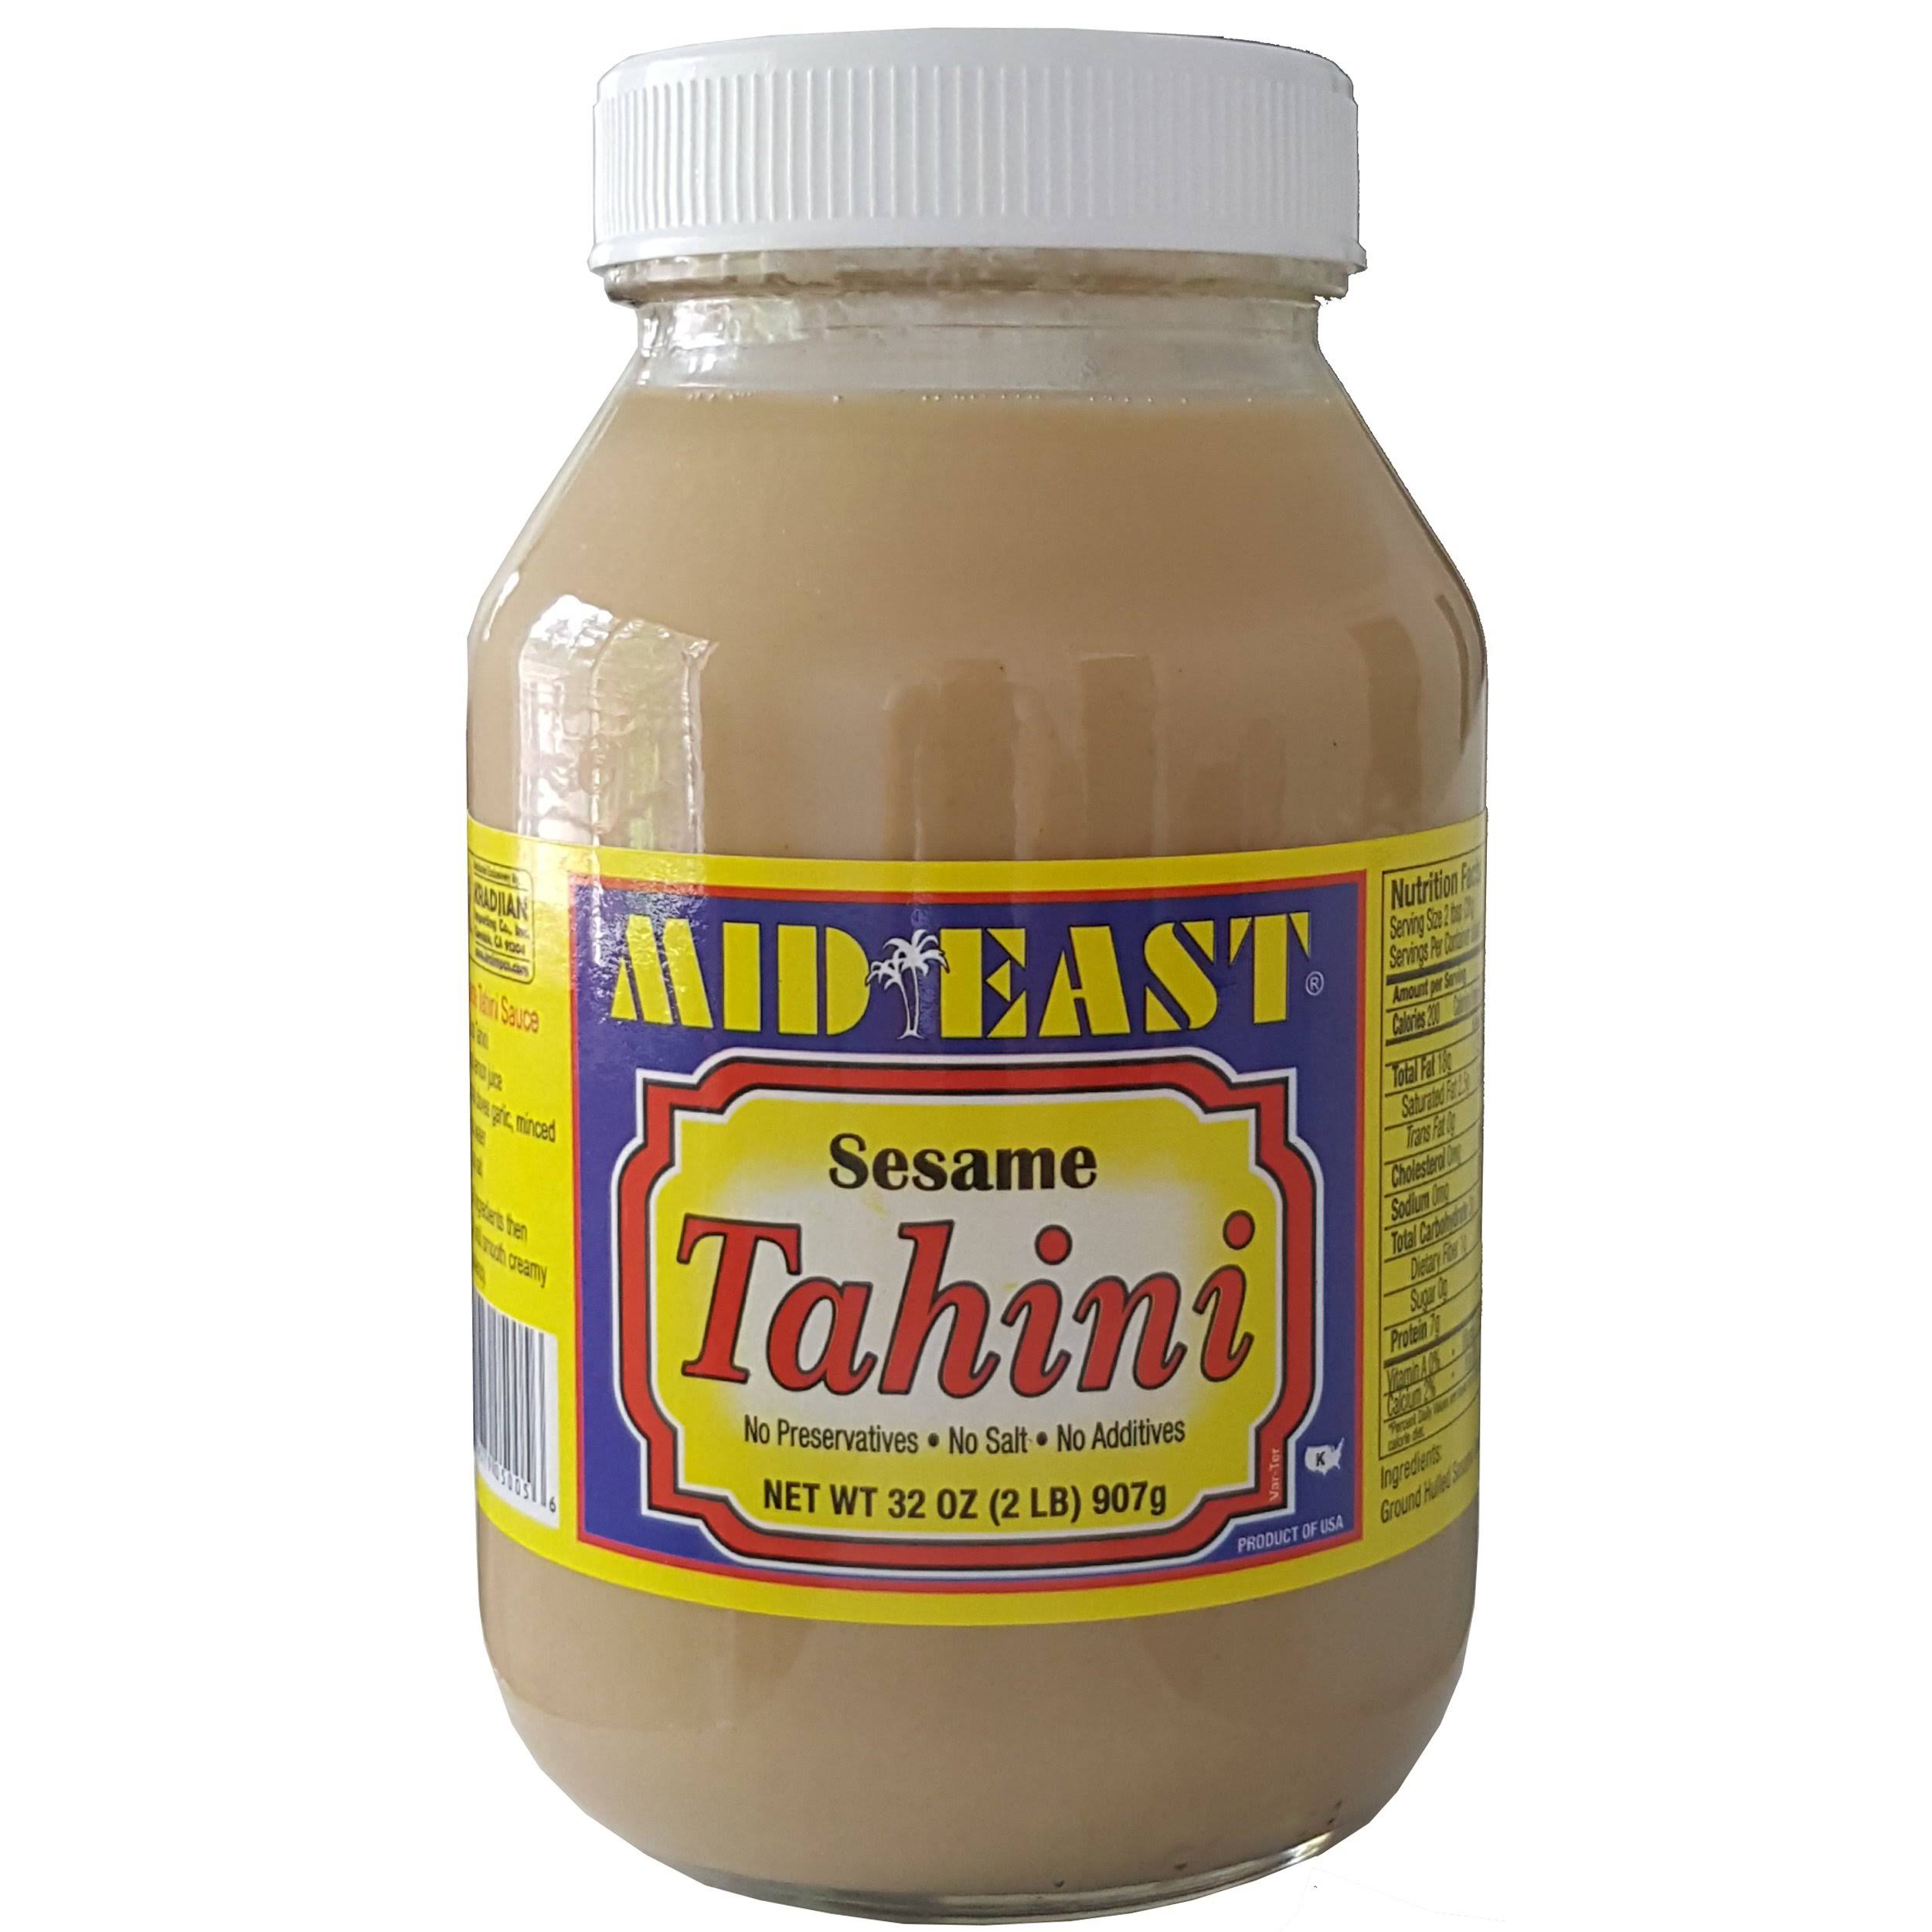 Mid East Sesame Tahini Jar 2lb (32 oz)